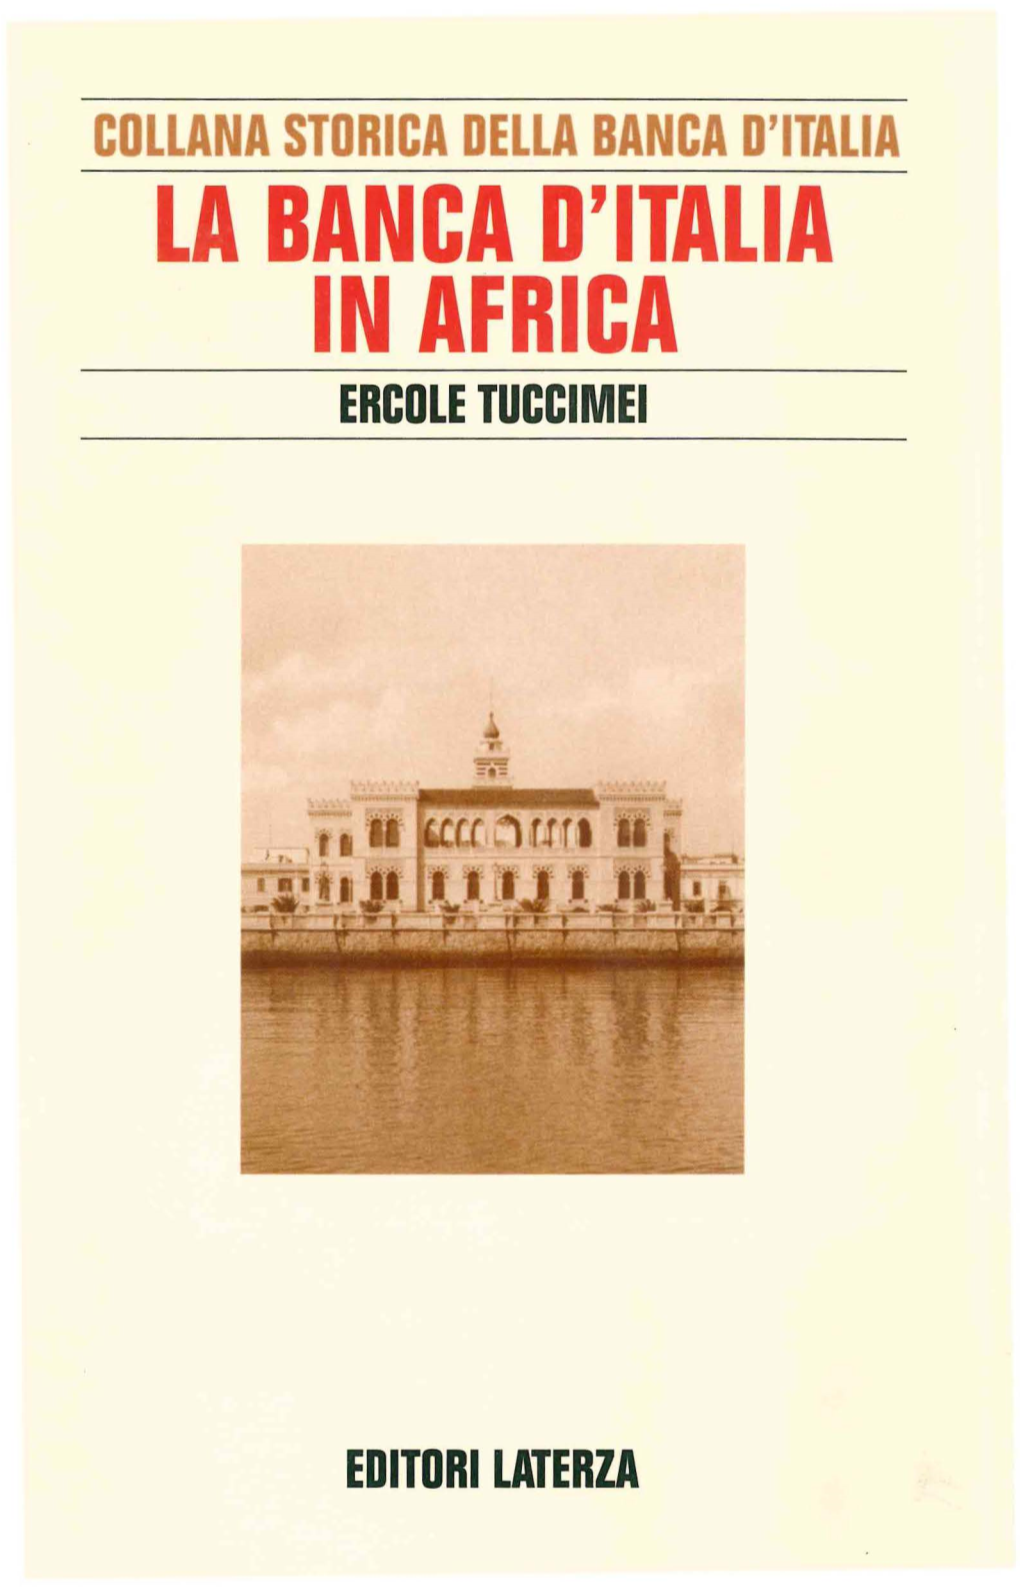 La Banca D'italia in Africa Ercole Tuccimei